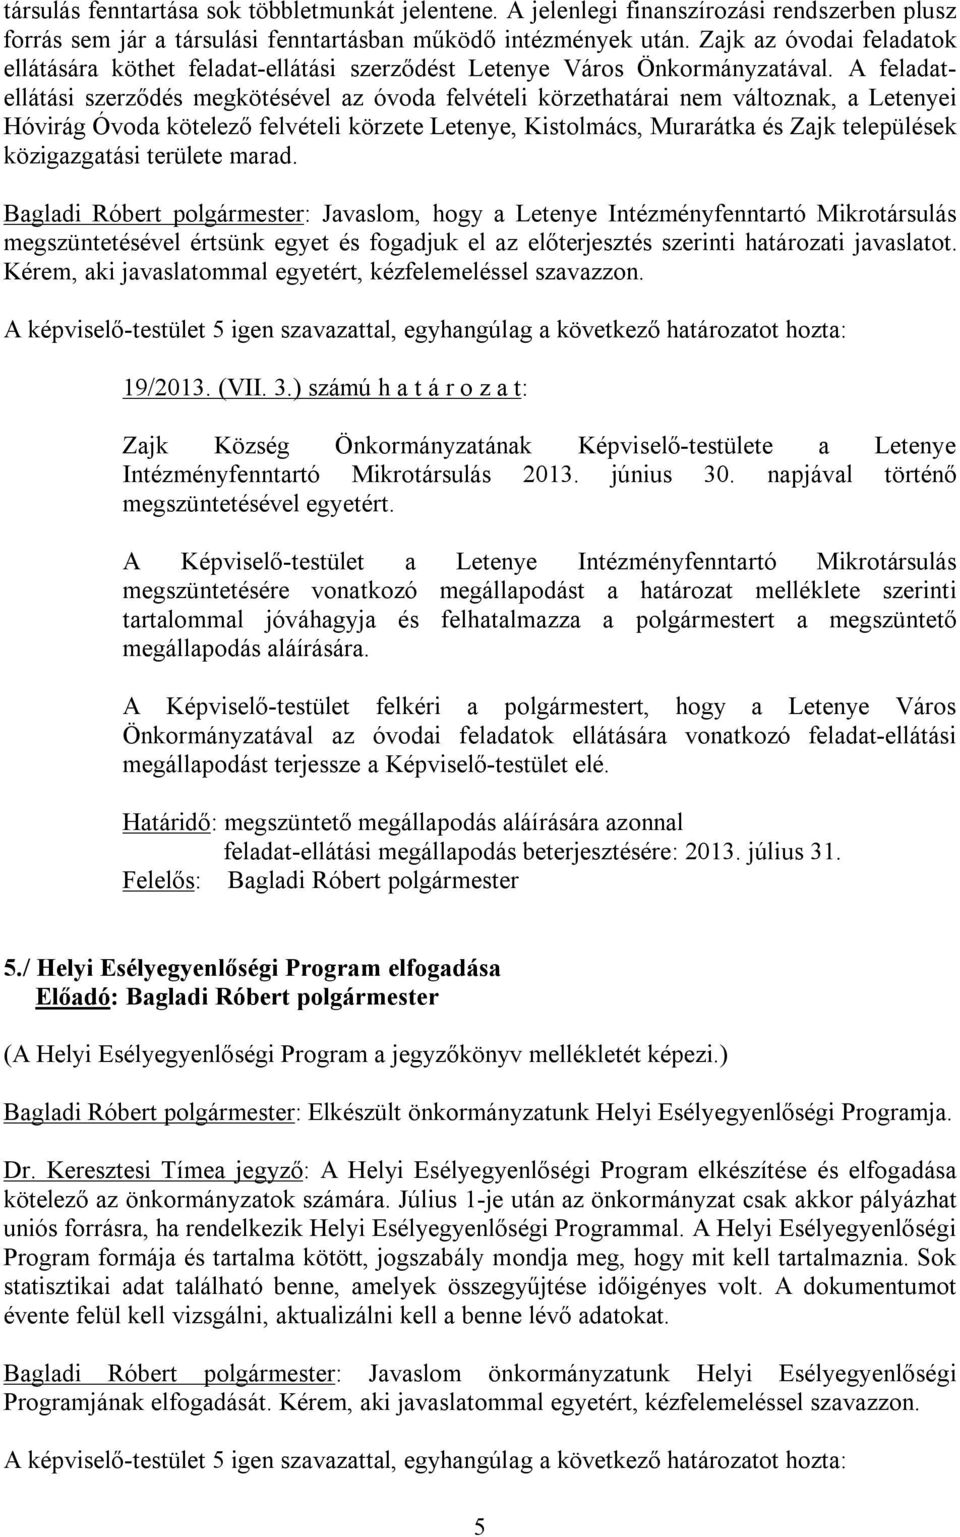 A feladatellátási szerződés megkötésével az óvoda felvételi körzethatárai nem változnak, a Letenyei Hóvirág Óvoda kötelező felvételi körzete Letenye, Kistolmács, Murarátka és Zajk települések